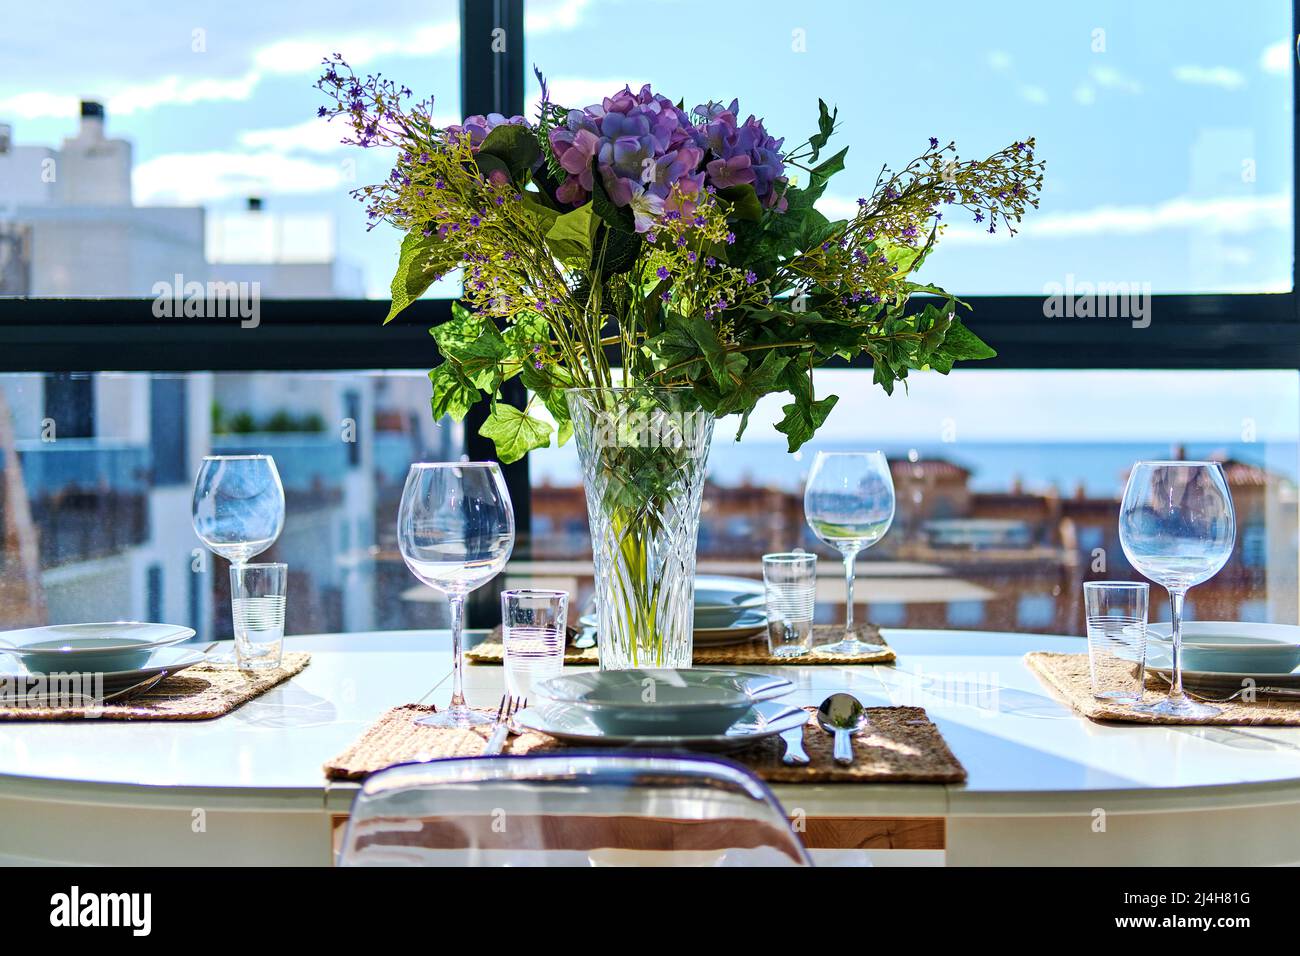 Schöne Tischanordnung mit Blumenstrauß in Vase, serviert Plätze mit Geschirr, Meer und Häuser Dächer Blick durch Fenster Stockfoto